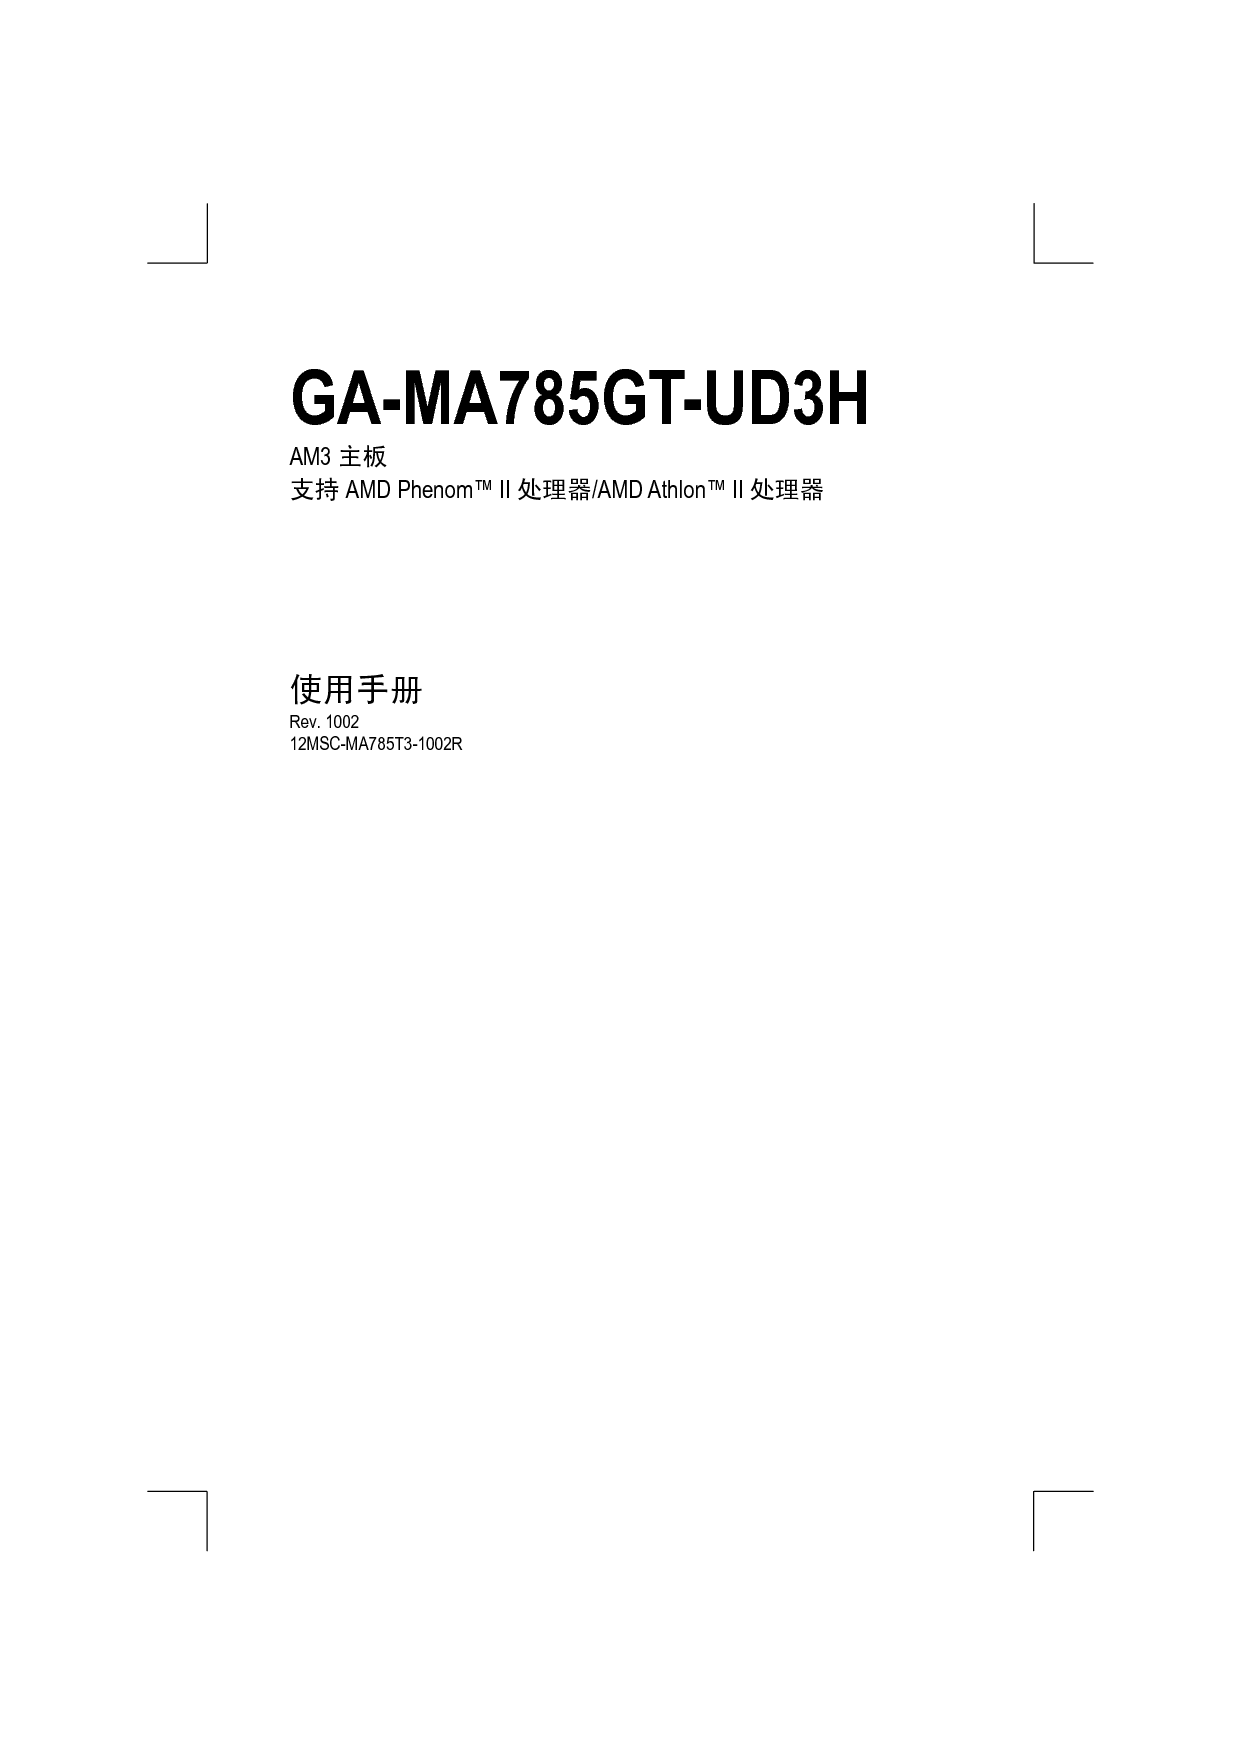 技嘉 Gigabyte GA-MA785GT-UD3H 1002版 使用手册 封面